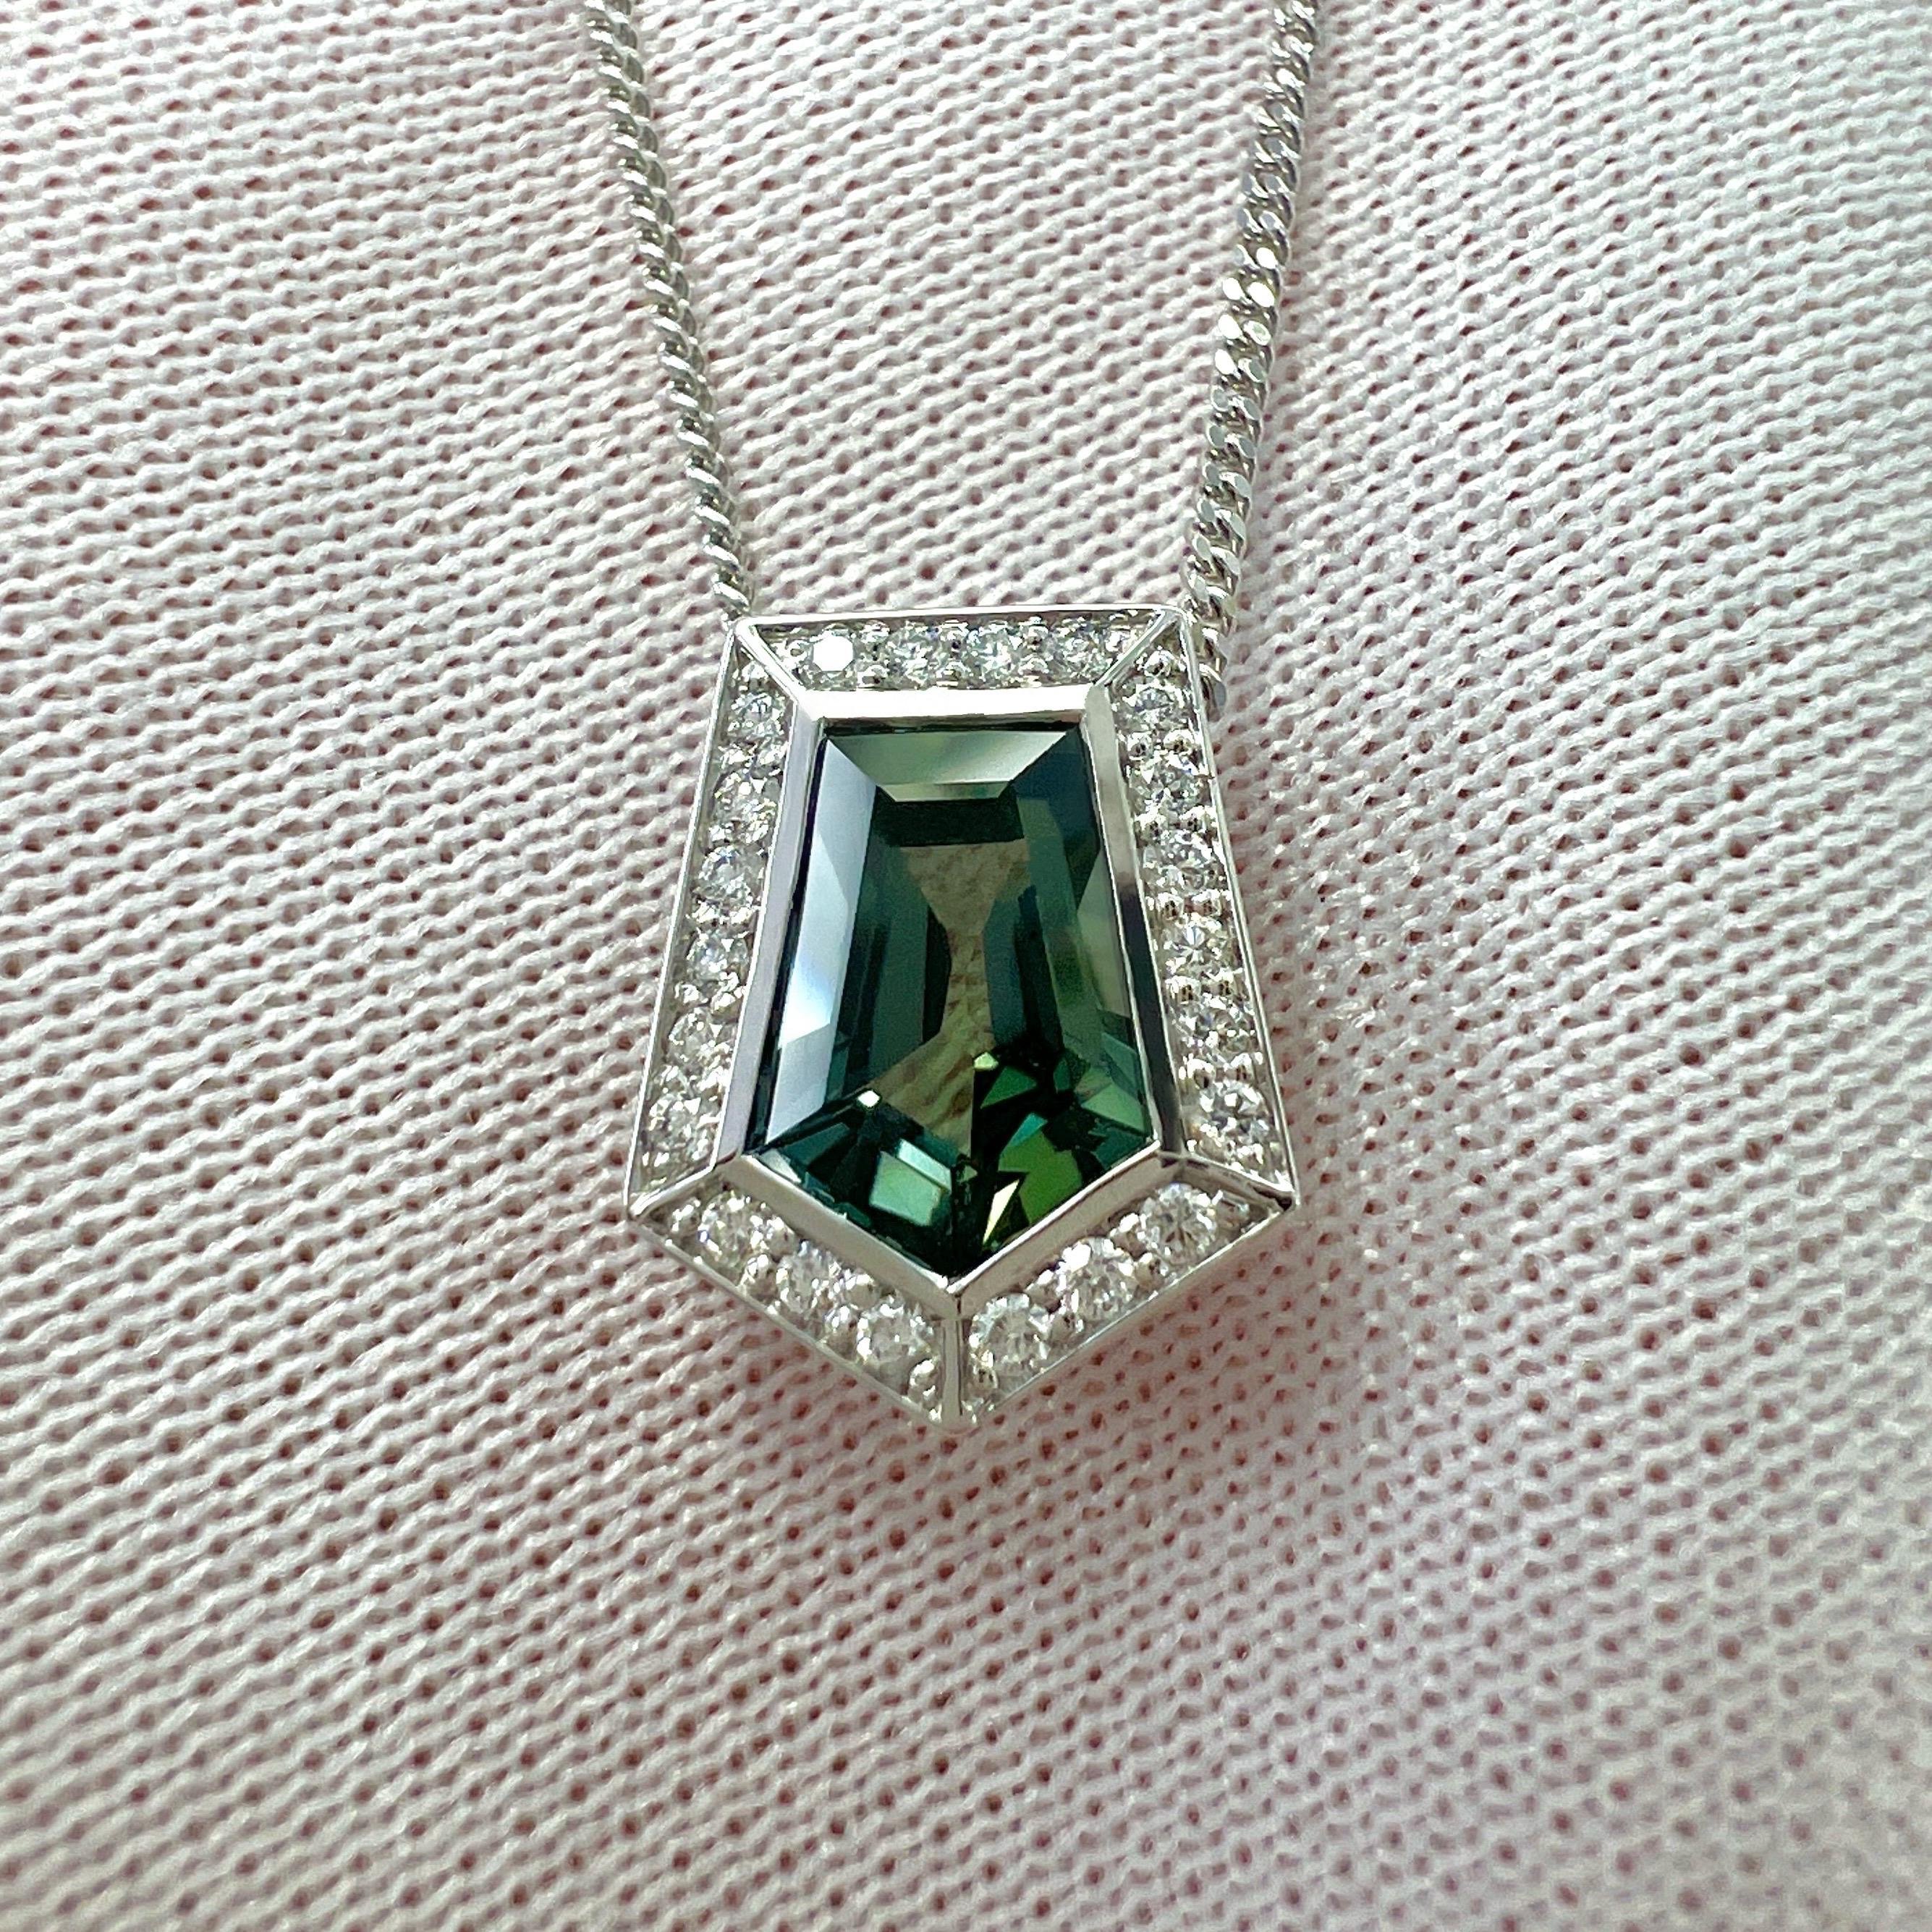 IGI Certified 1.46ct Colour Change Untreated Fancy Cut Sapphire Diamond Pendant For Sale 2